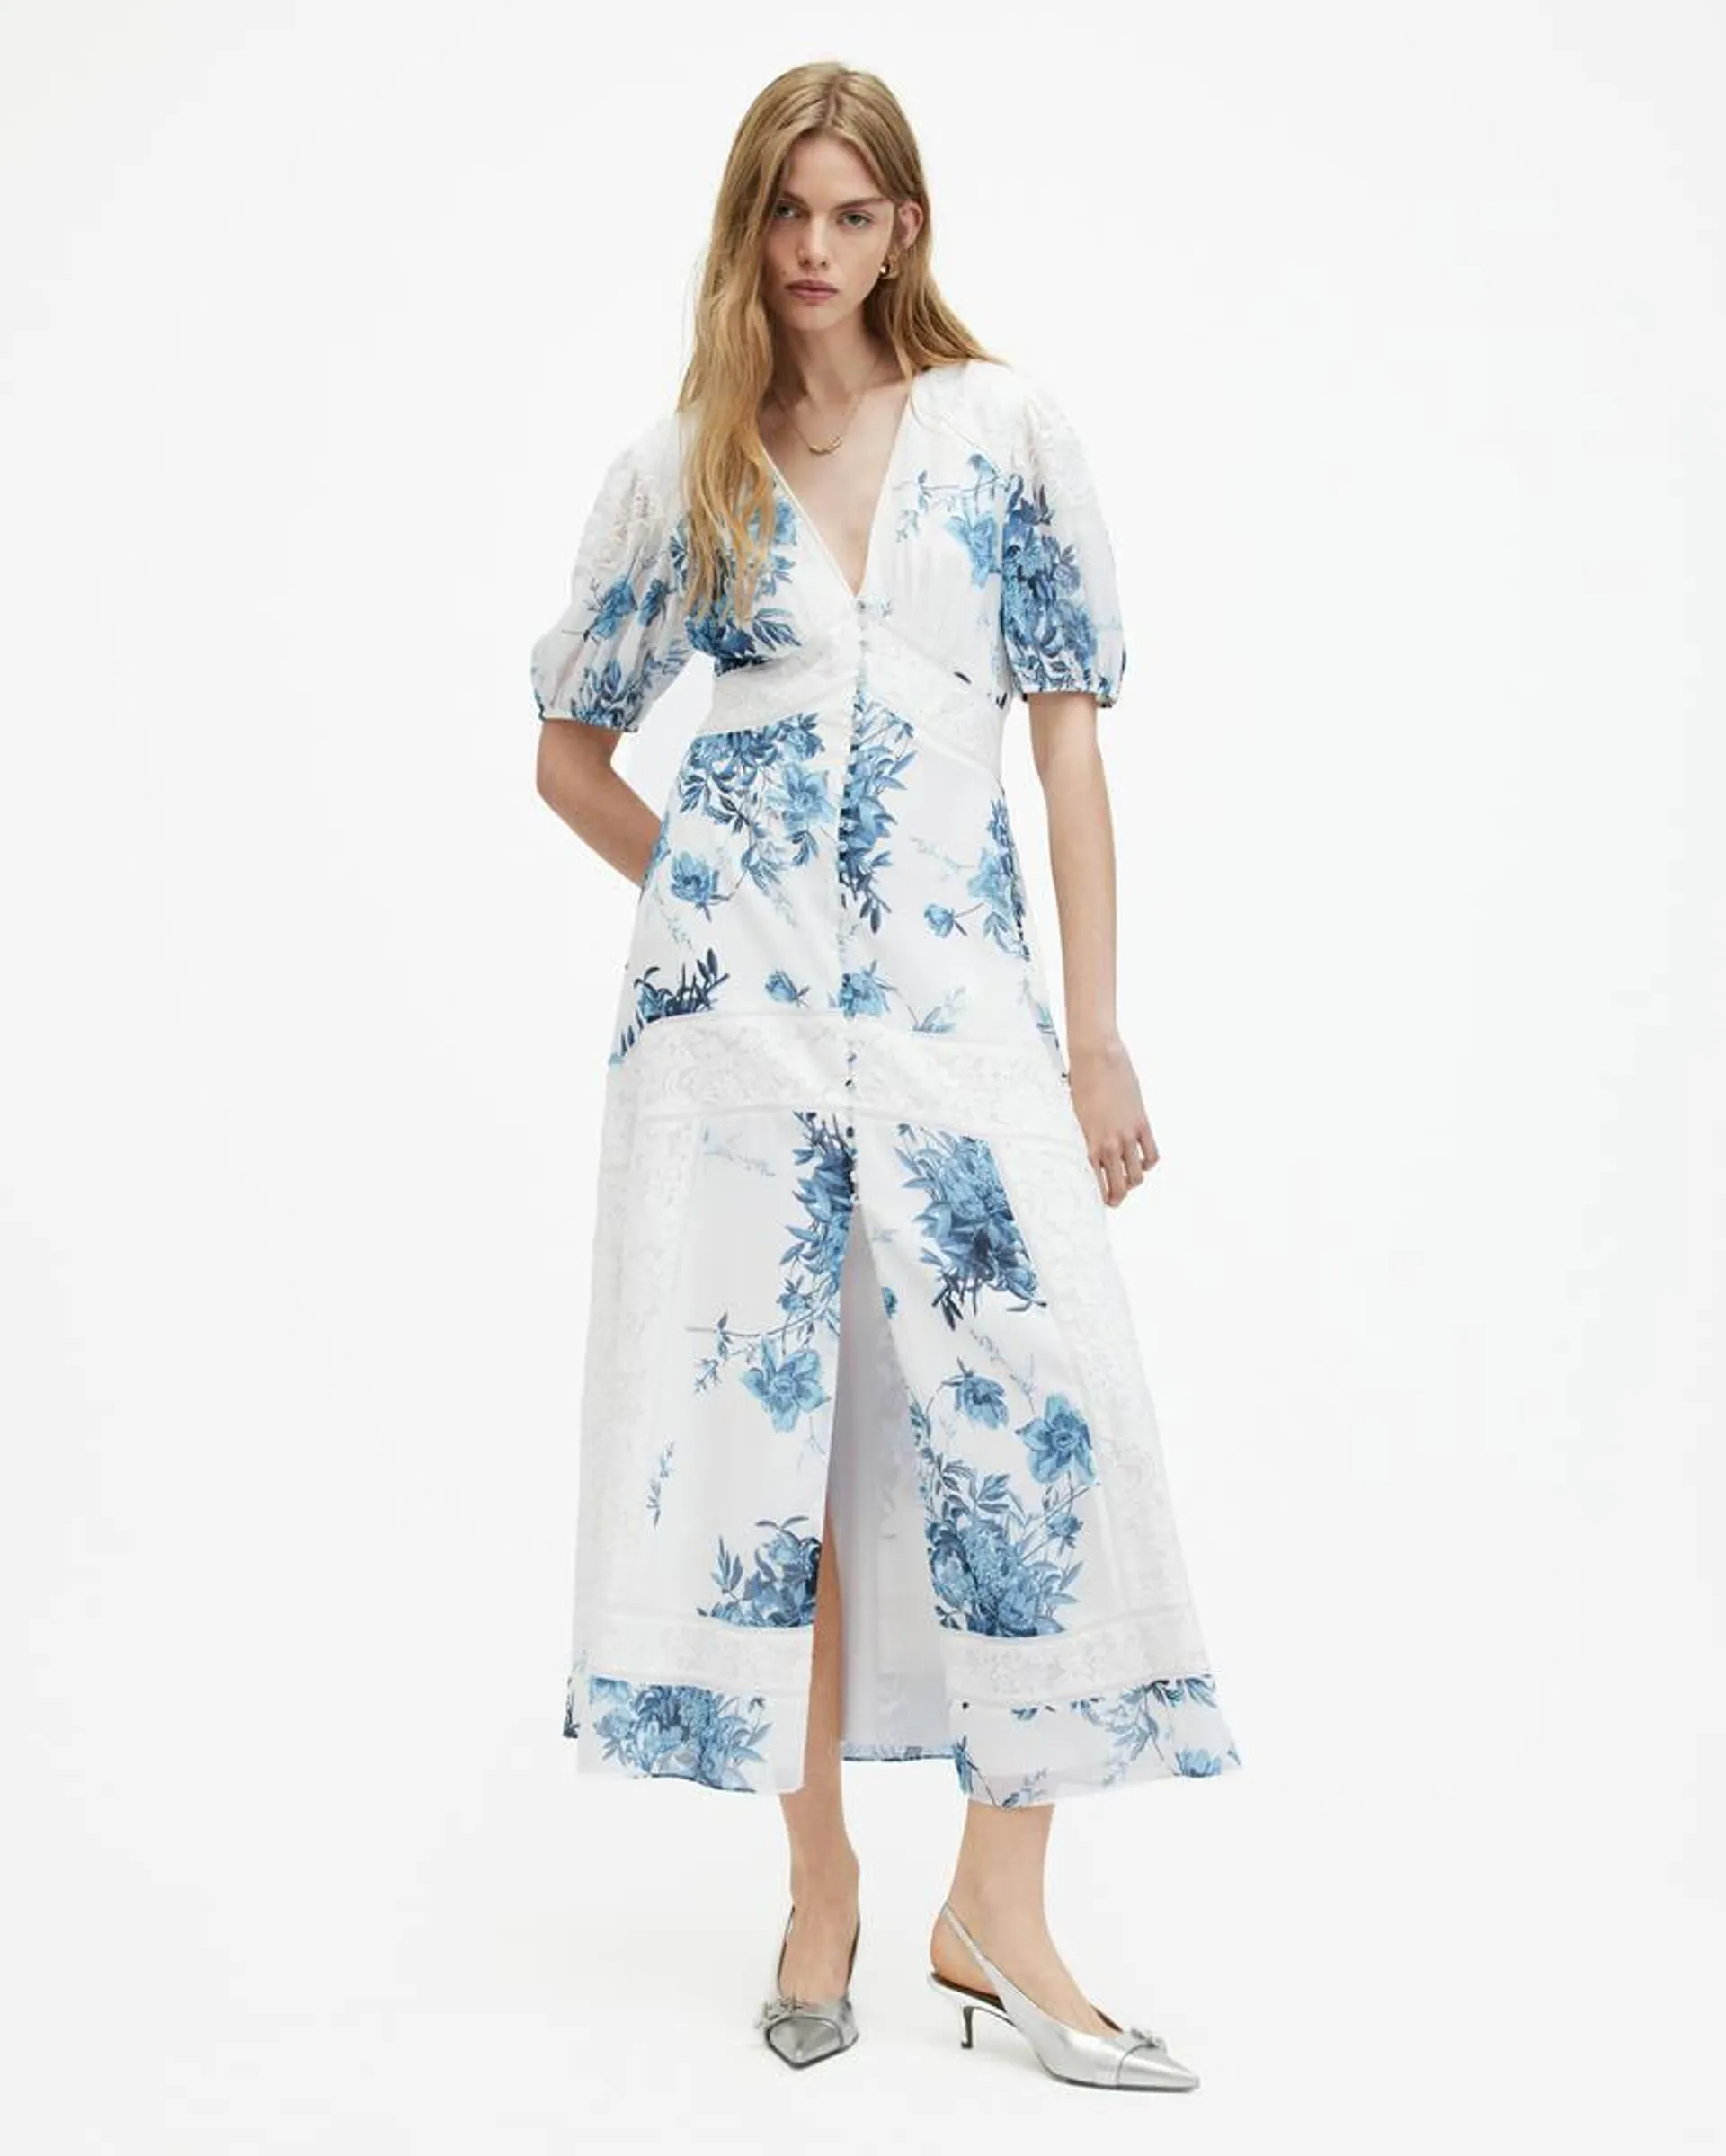 Dinah Lace Dekorah Floral Maxi Dress